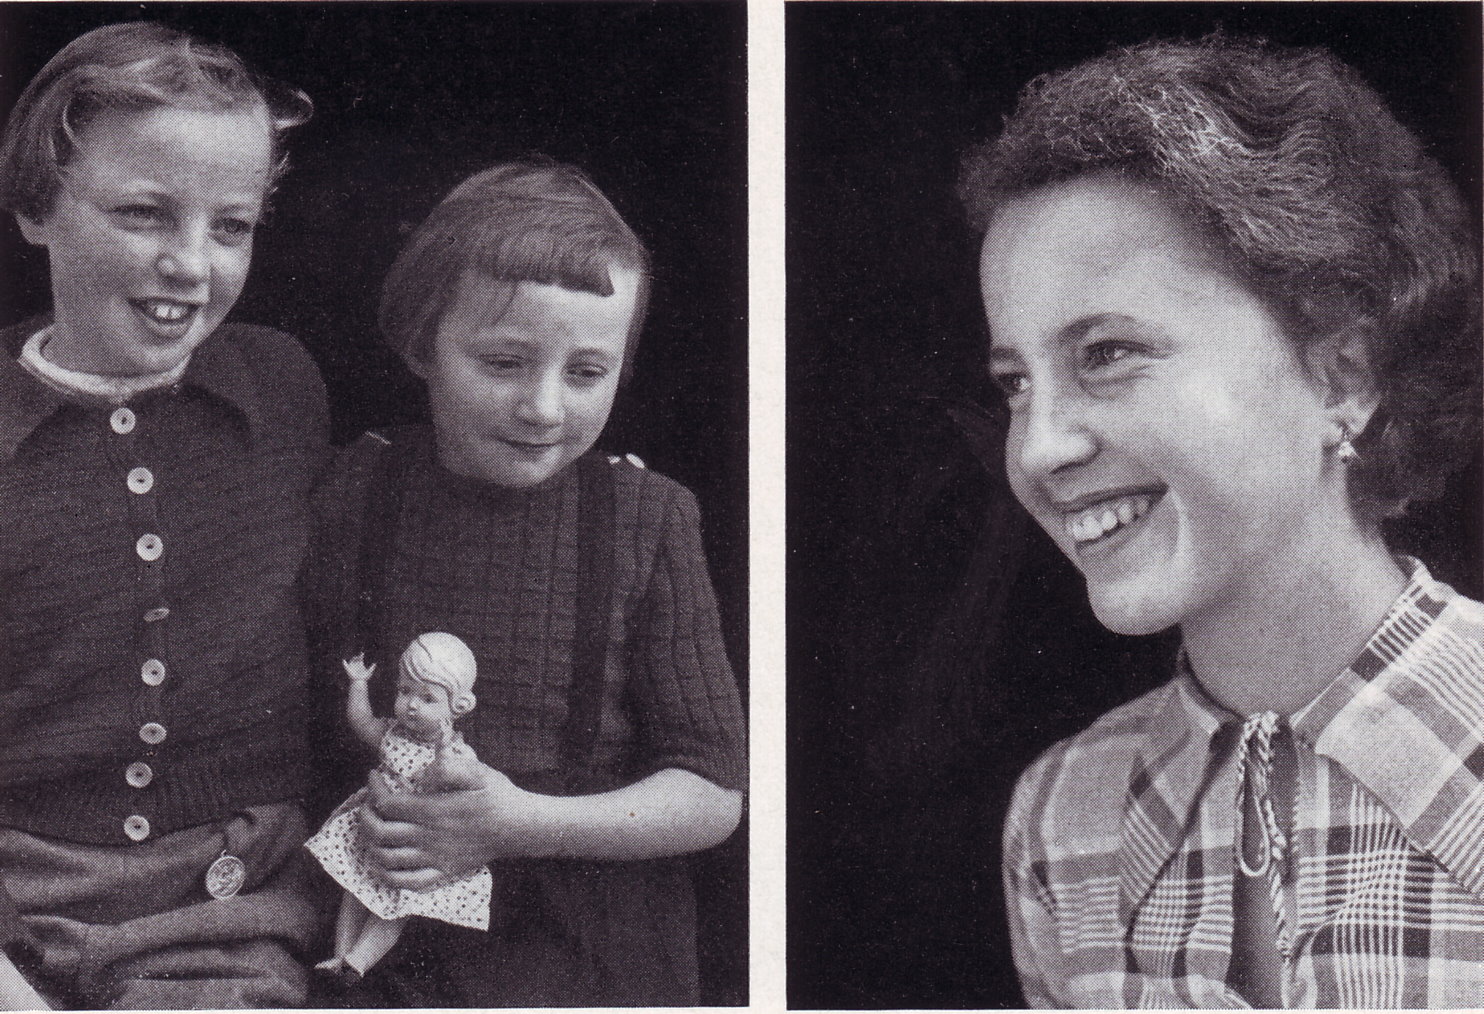 Lore, Edith und Gerda Segelken, die drei Jüngsten von fünf Mädchen des Bauern Gerhard Segelken und Lucie Gesine Segelken